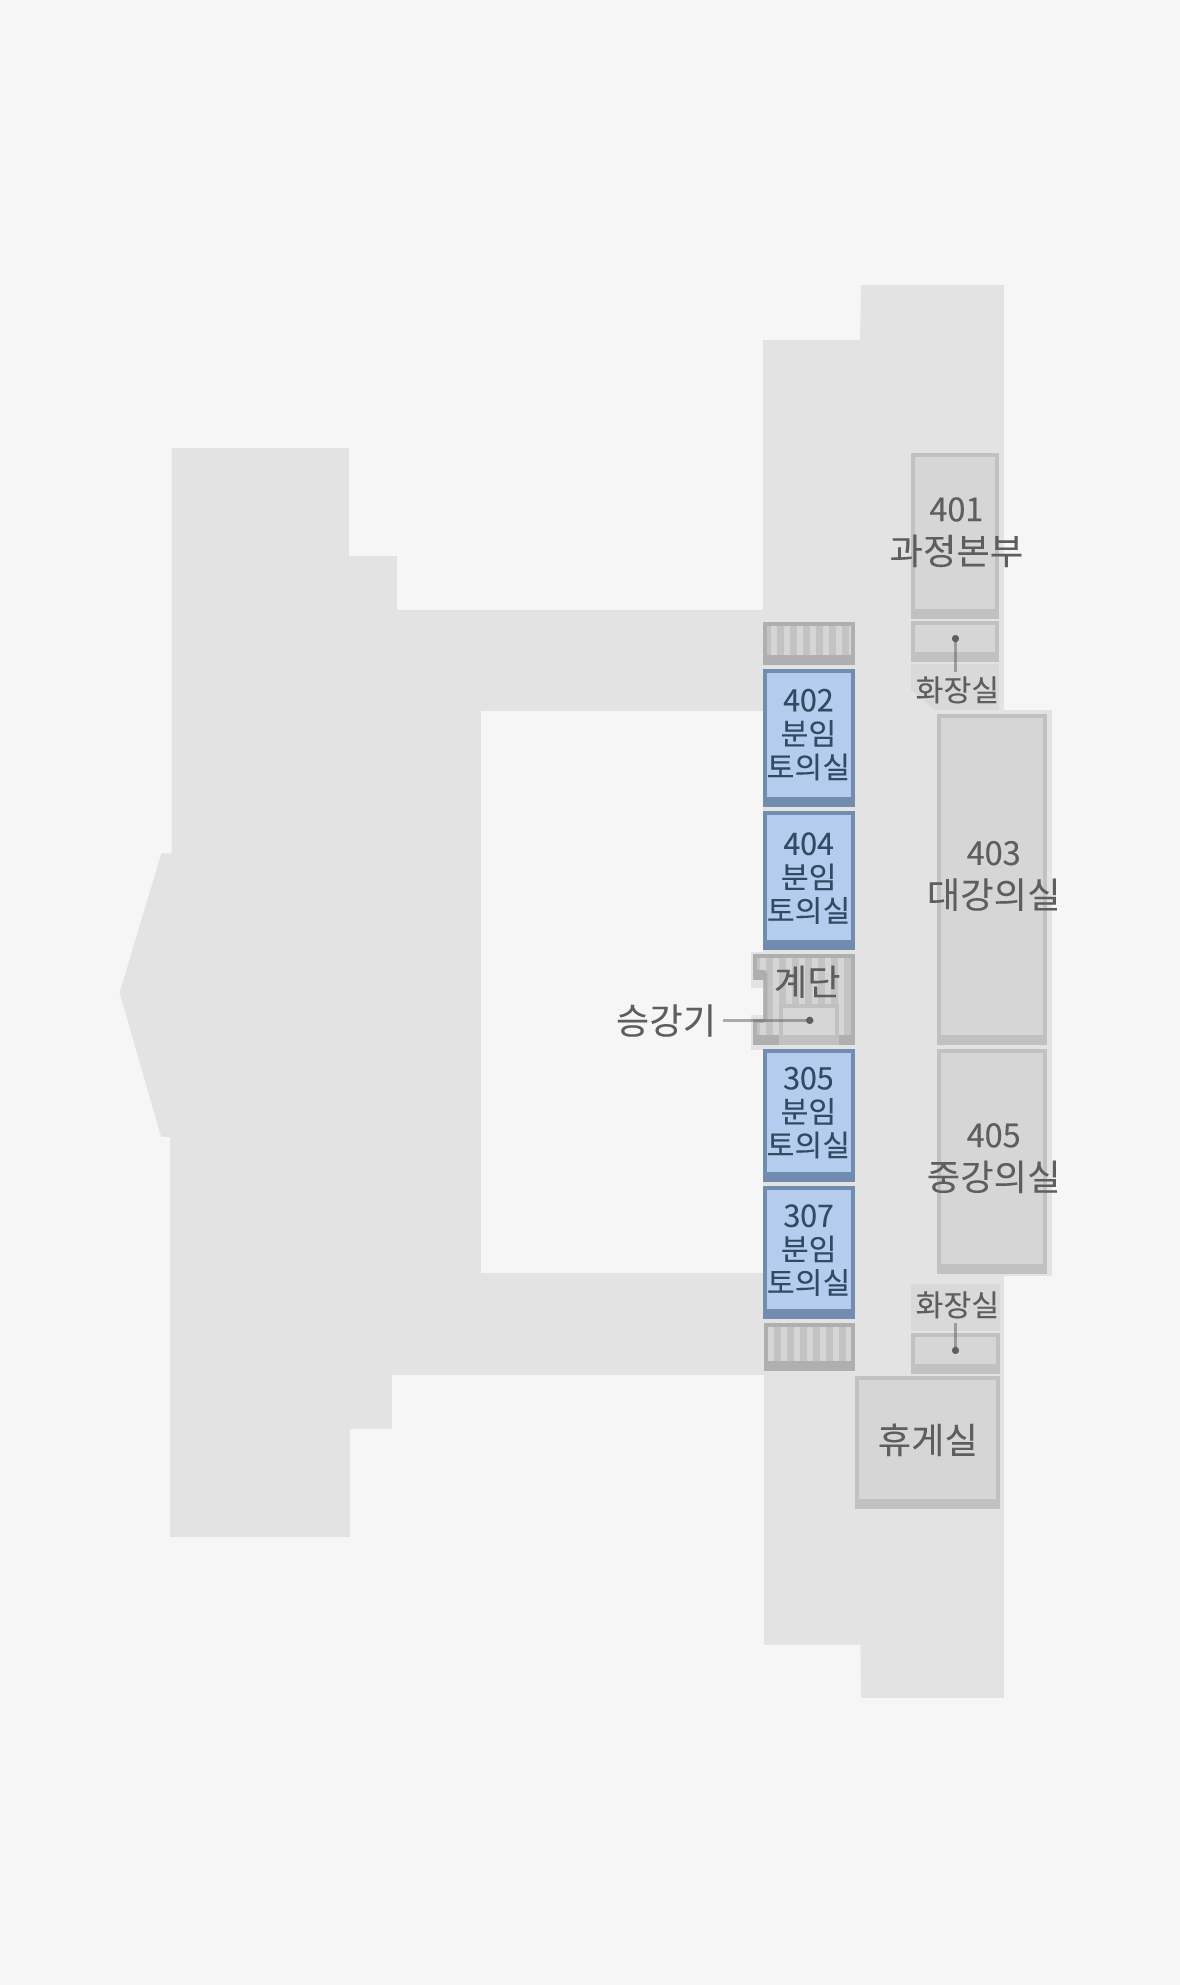 402호, 404호, 406호, 407호 분임토의실은 본관동 4층에 위치해 있습니다.